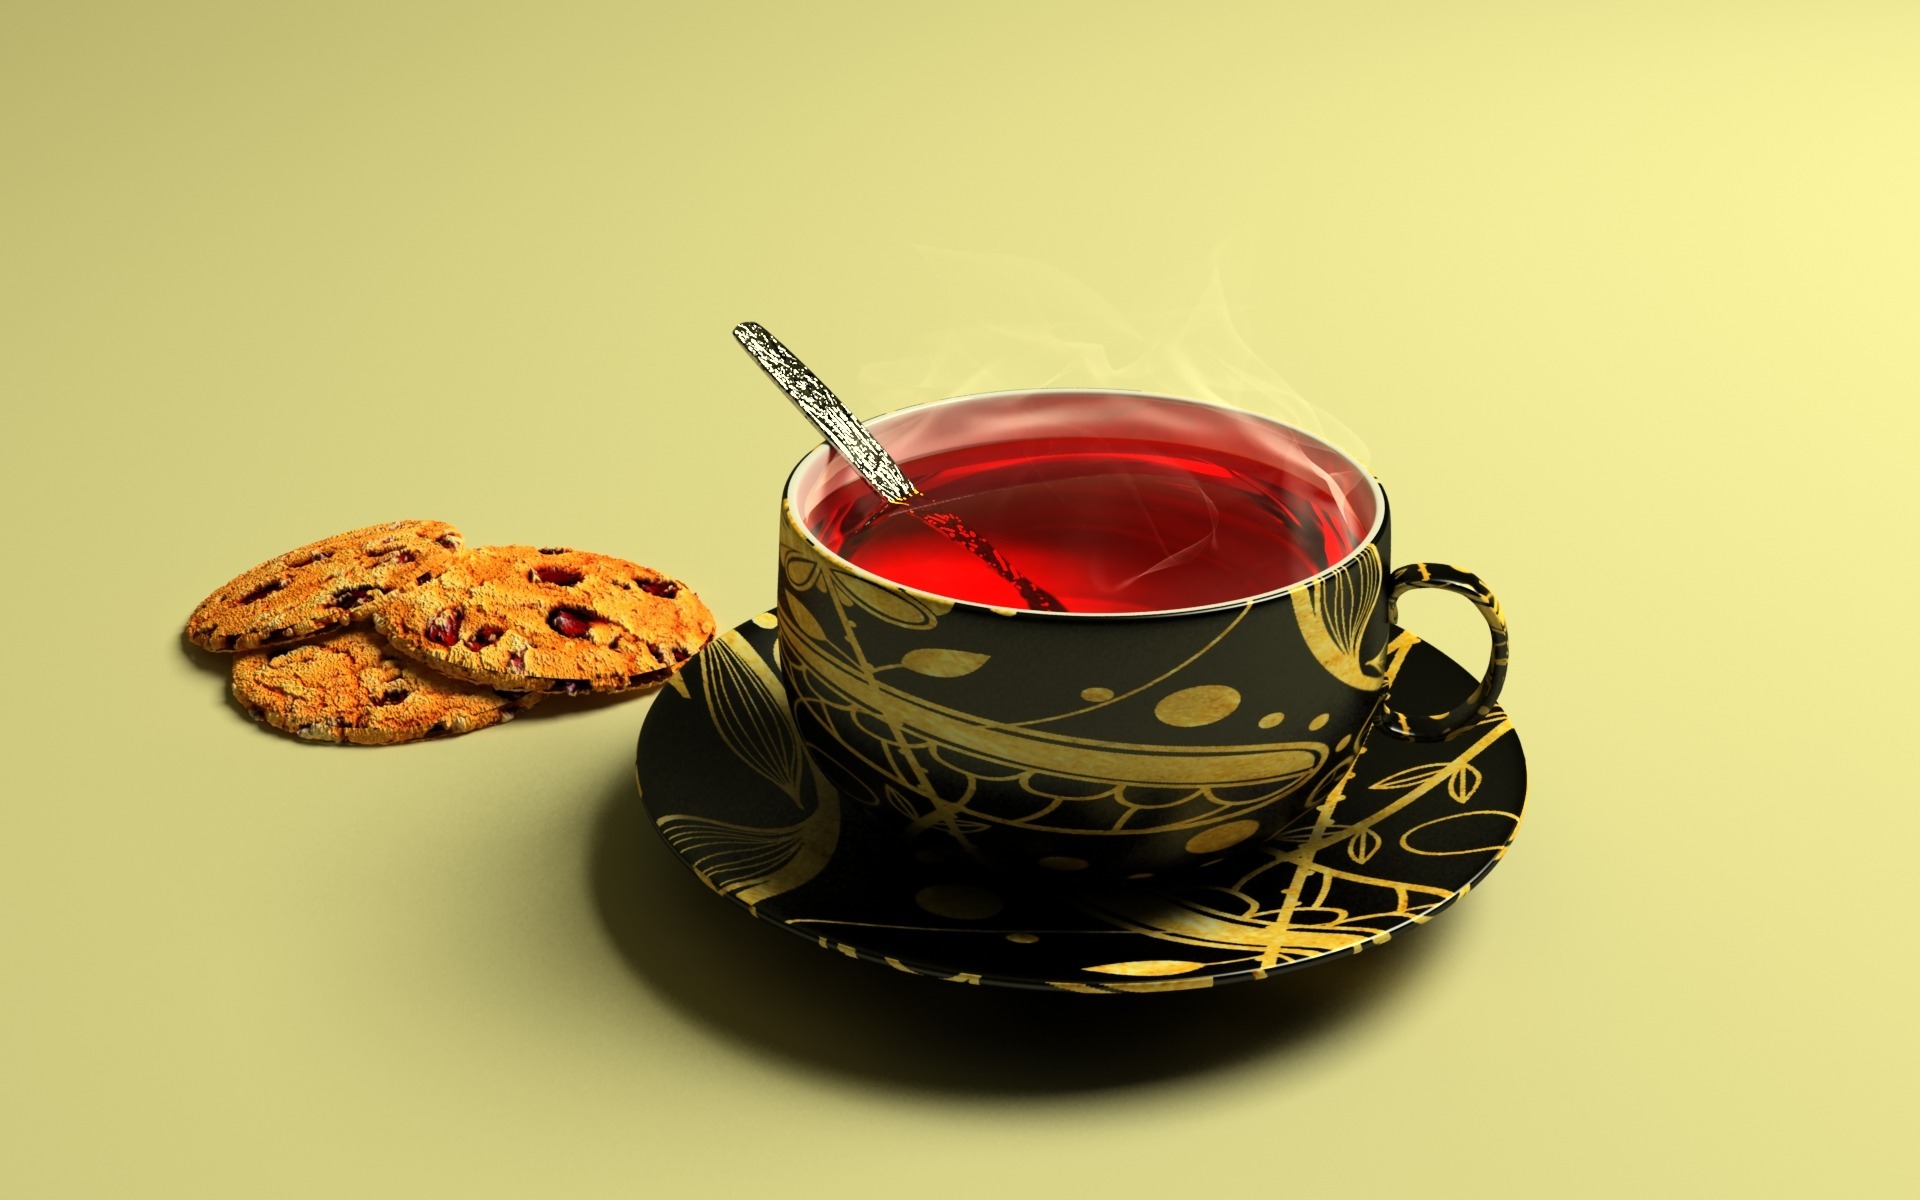 Обои кружка чай красный - бесплатные картинки на Fonwall